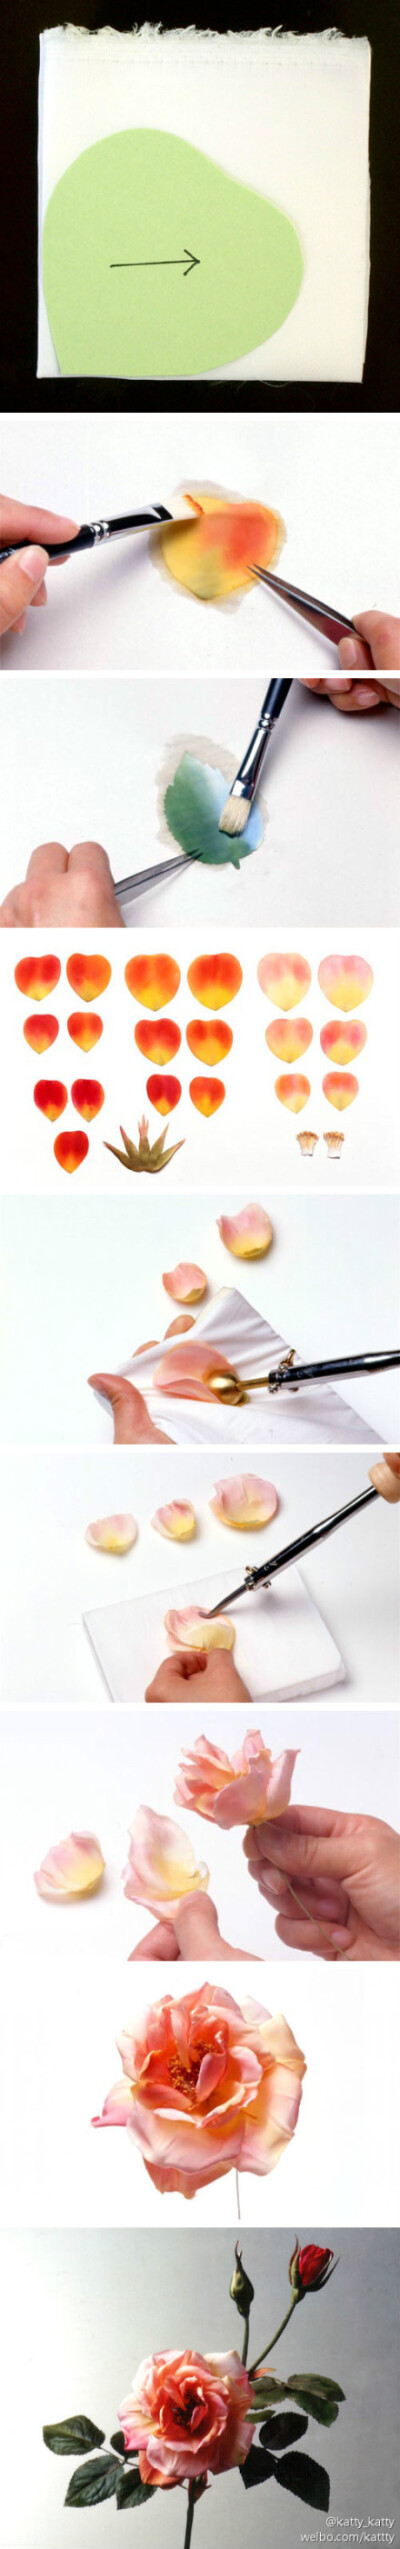 手做布花是一门很有意思的手艺，布料经过染烫组合，能在手中绽放出美丽的花朵。(来自饭田深雪布花教室的简版制作过程http://t.cn/zHRdu8K